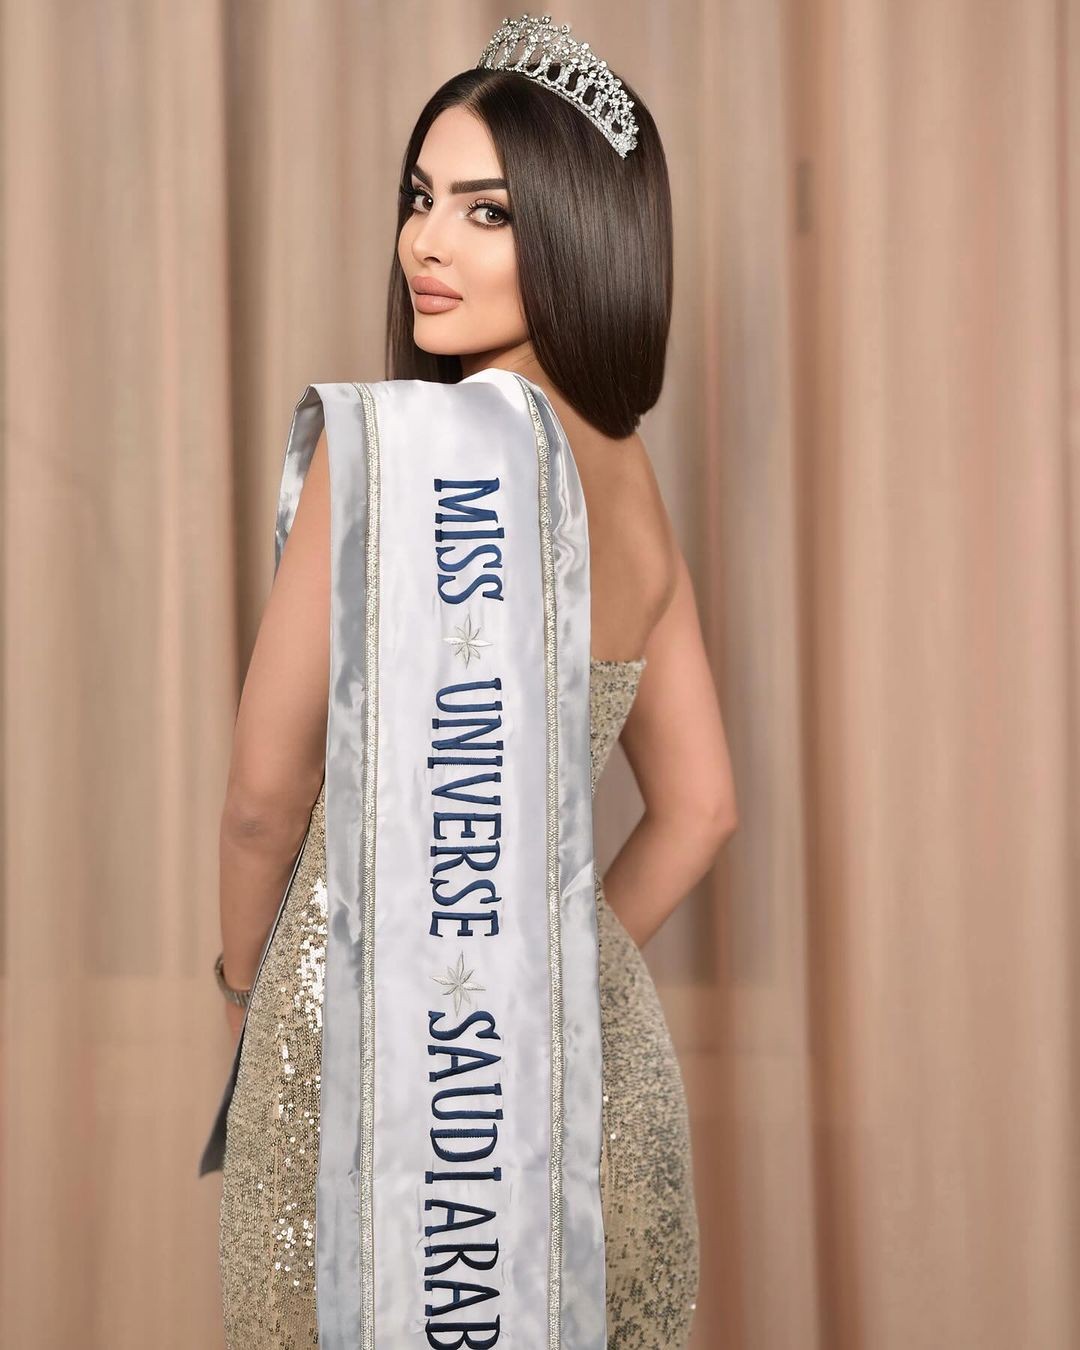 Nhan sắc gây tranh cãi của người đẹp Saudi Arabia đầu tiên thi Hoa hậu Hoàn vũ ảnh 3